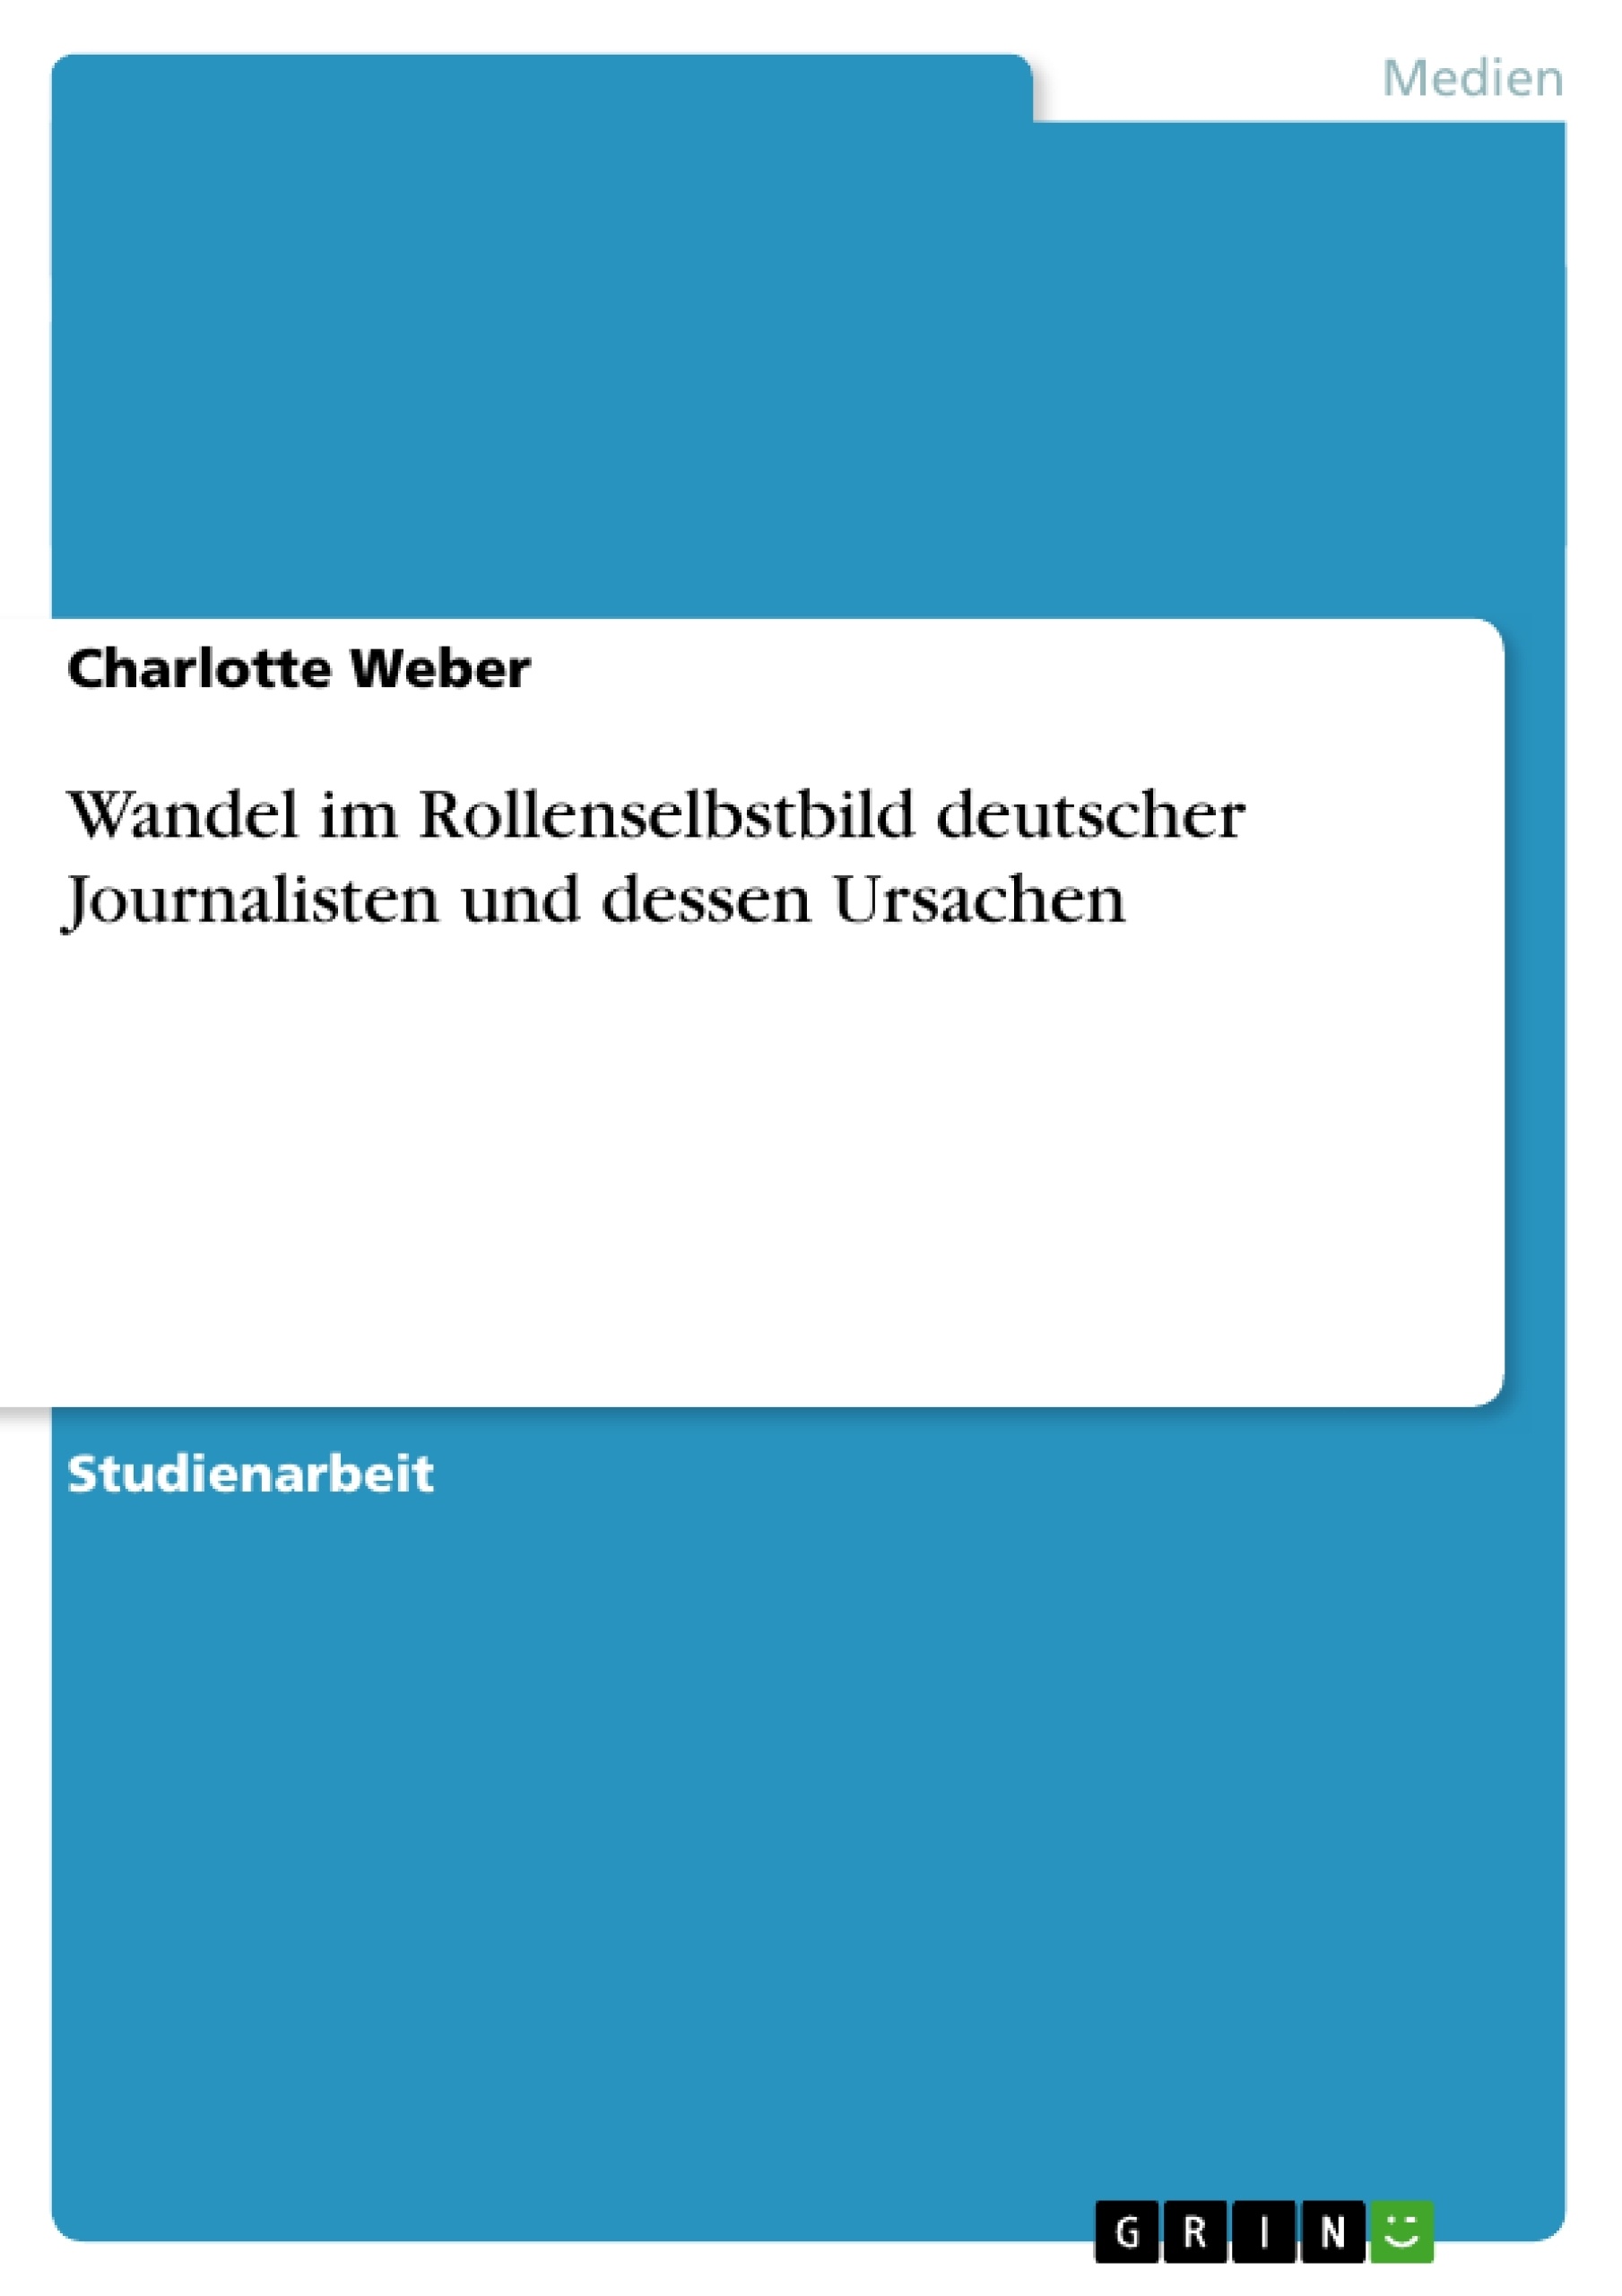 Titre: Wandel im Rollenselbstbild deutscher Journalisten und dessen Ursachen